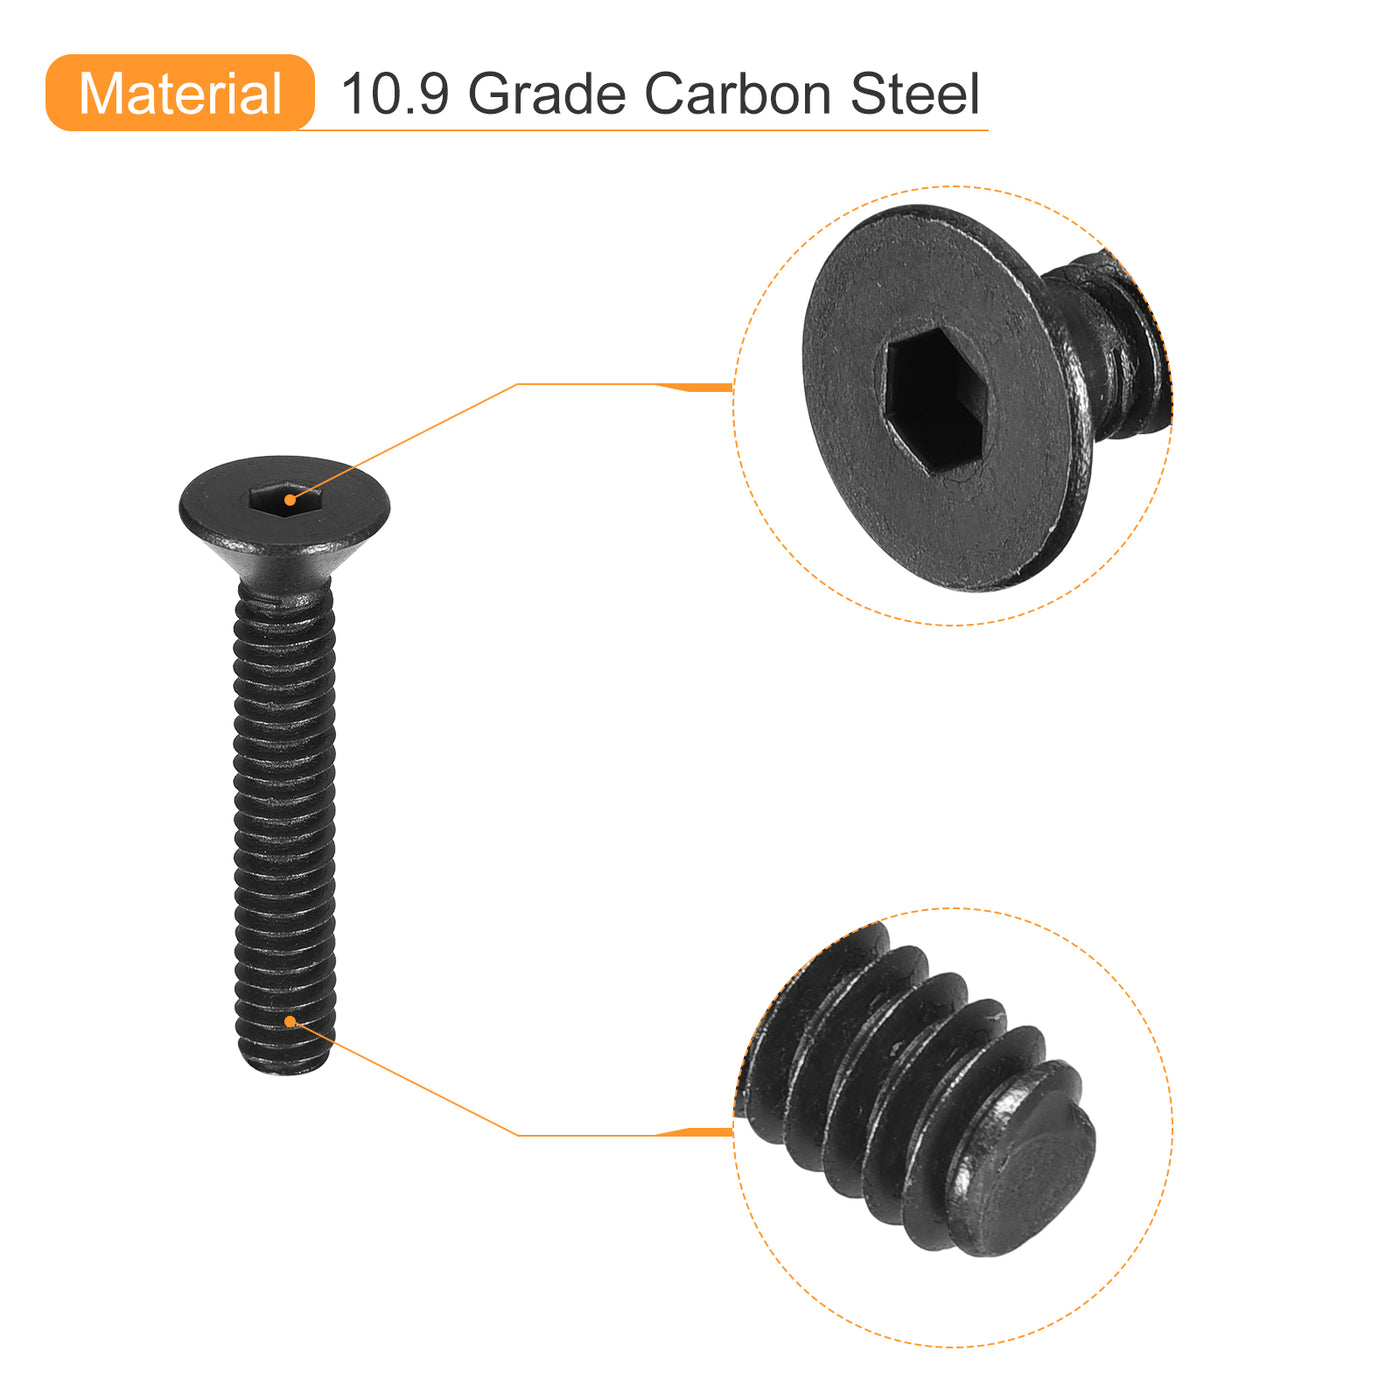 uxcell Uxcell #6-32x1" Flat Head Socket Cap Screws, 10.9 Grade Carbon, Black, 10pcs